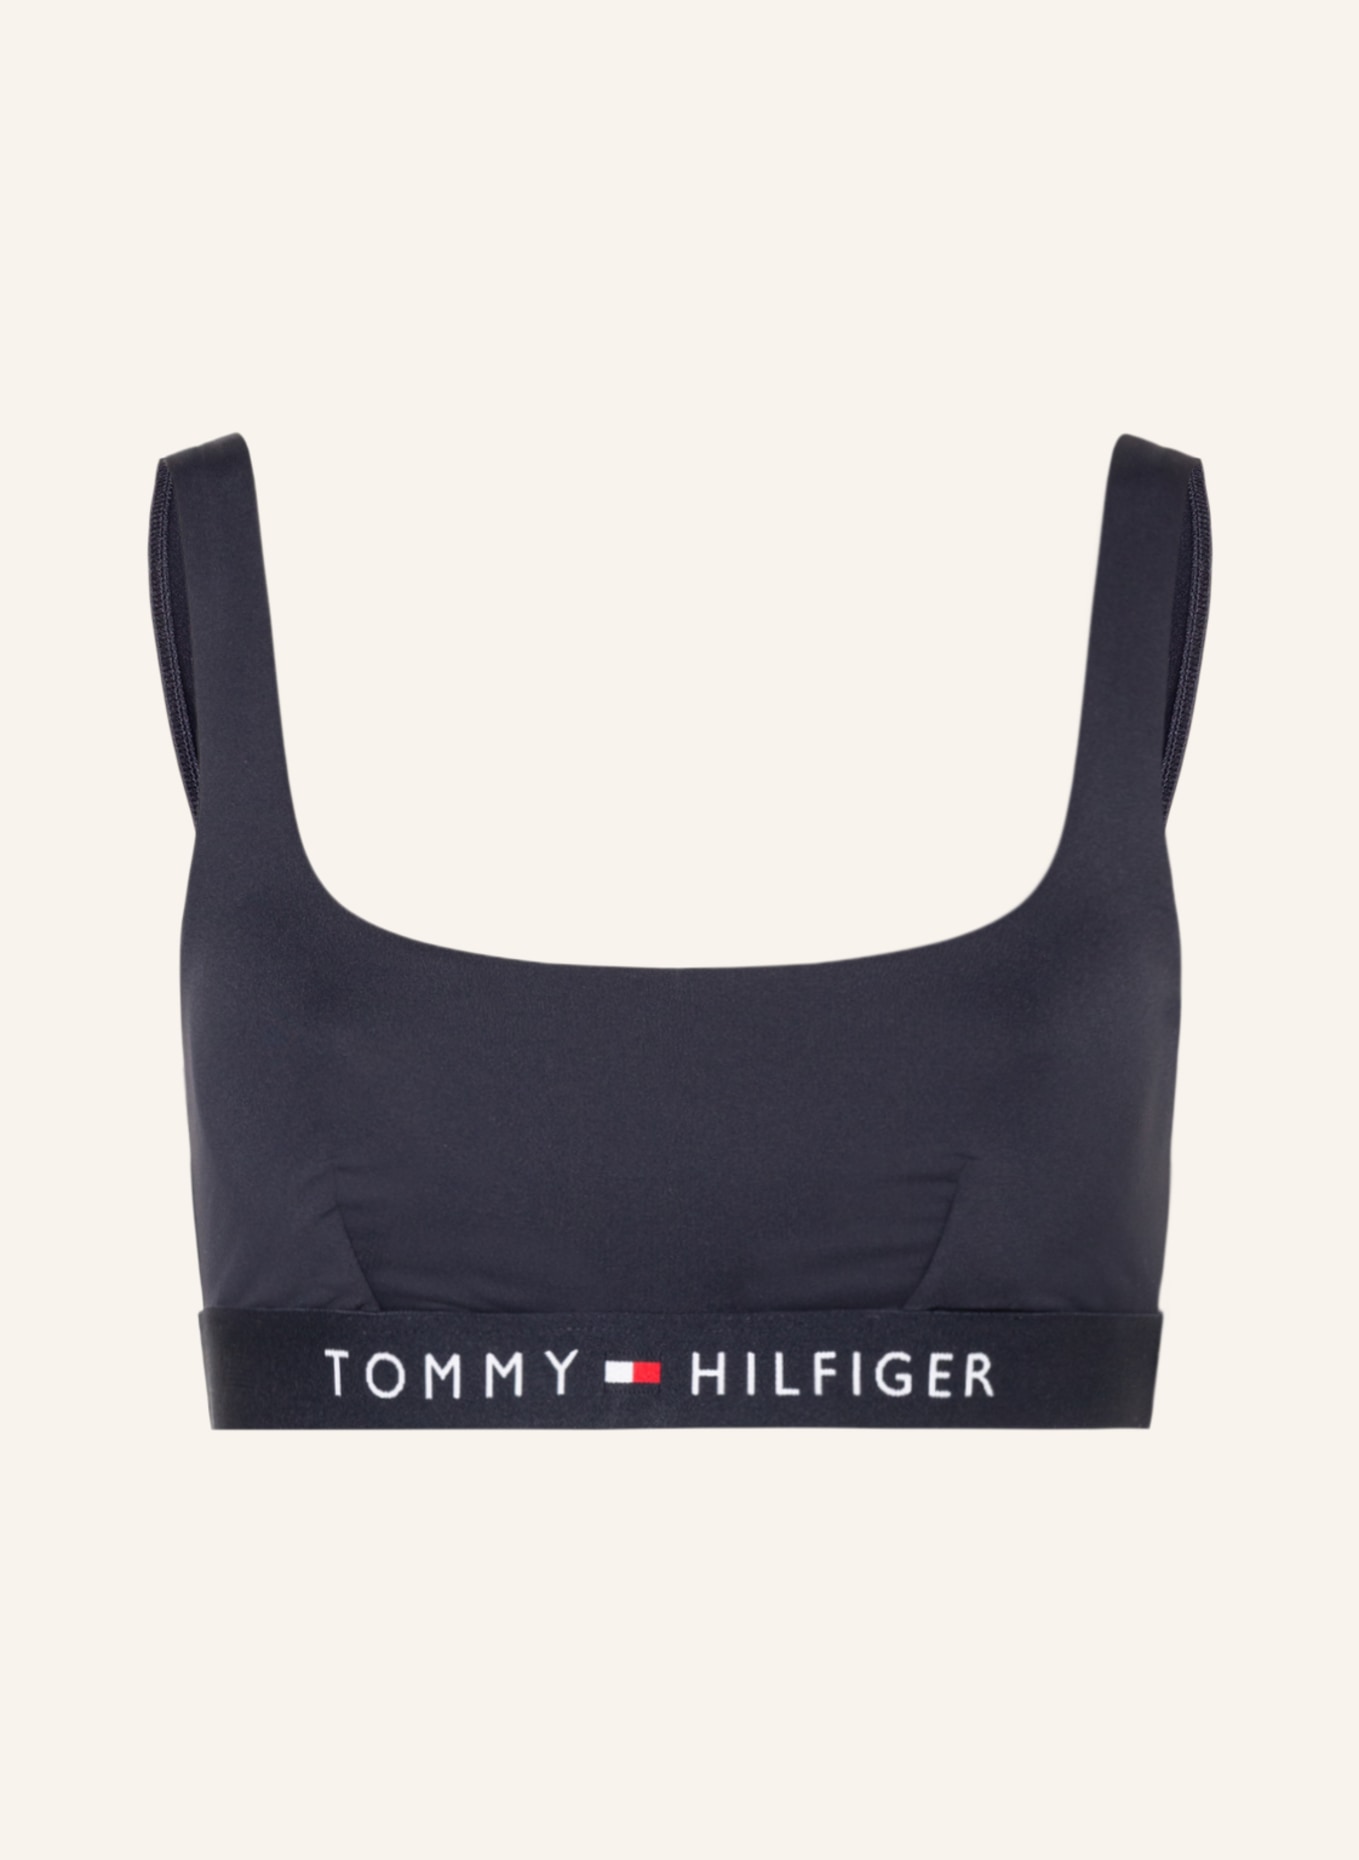 TOMMY HILFIGER Bralette bikini top, Color: DARK BLUE (Image 1)